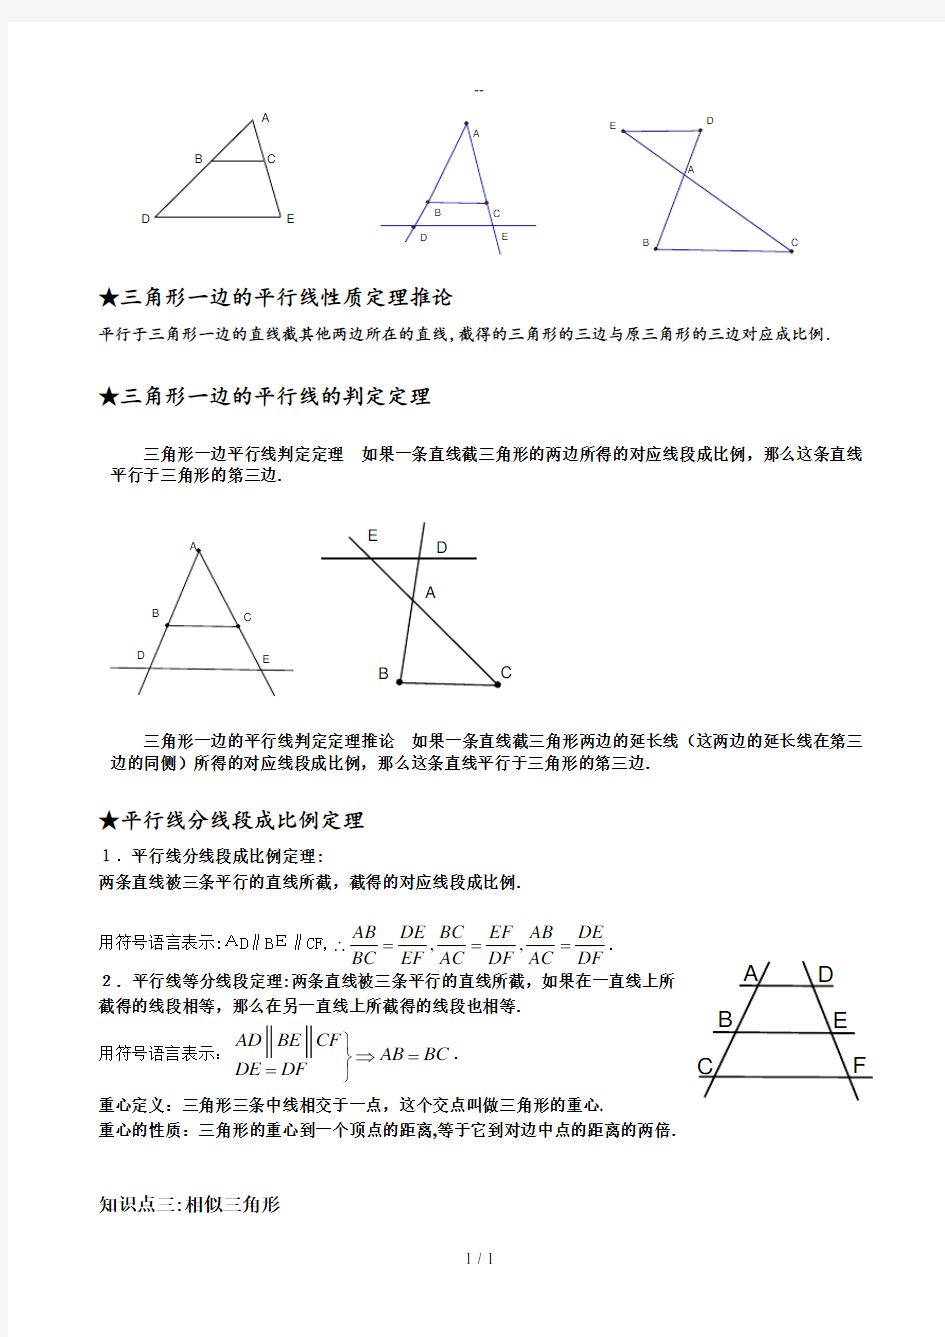 九年级相似三角形知识点总结及例题讲解改